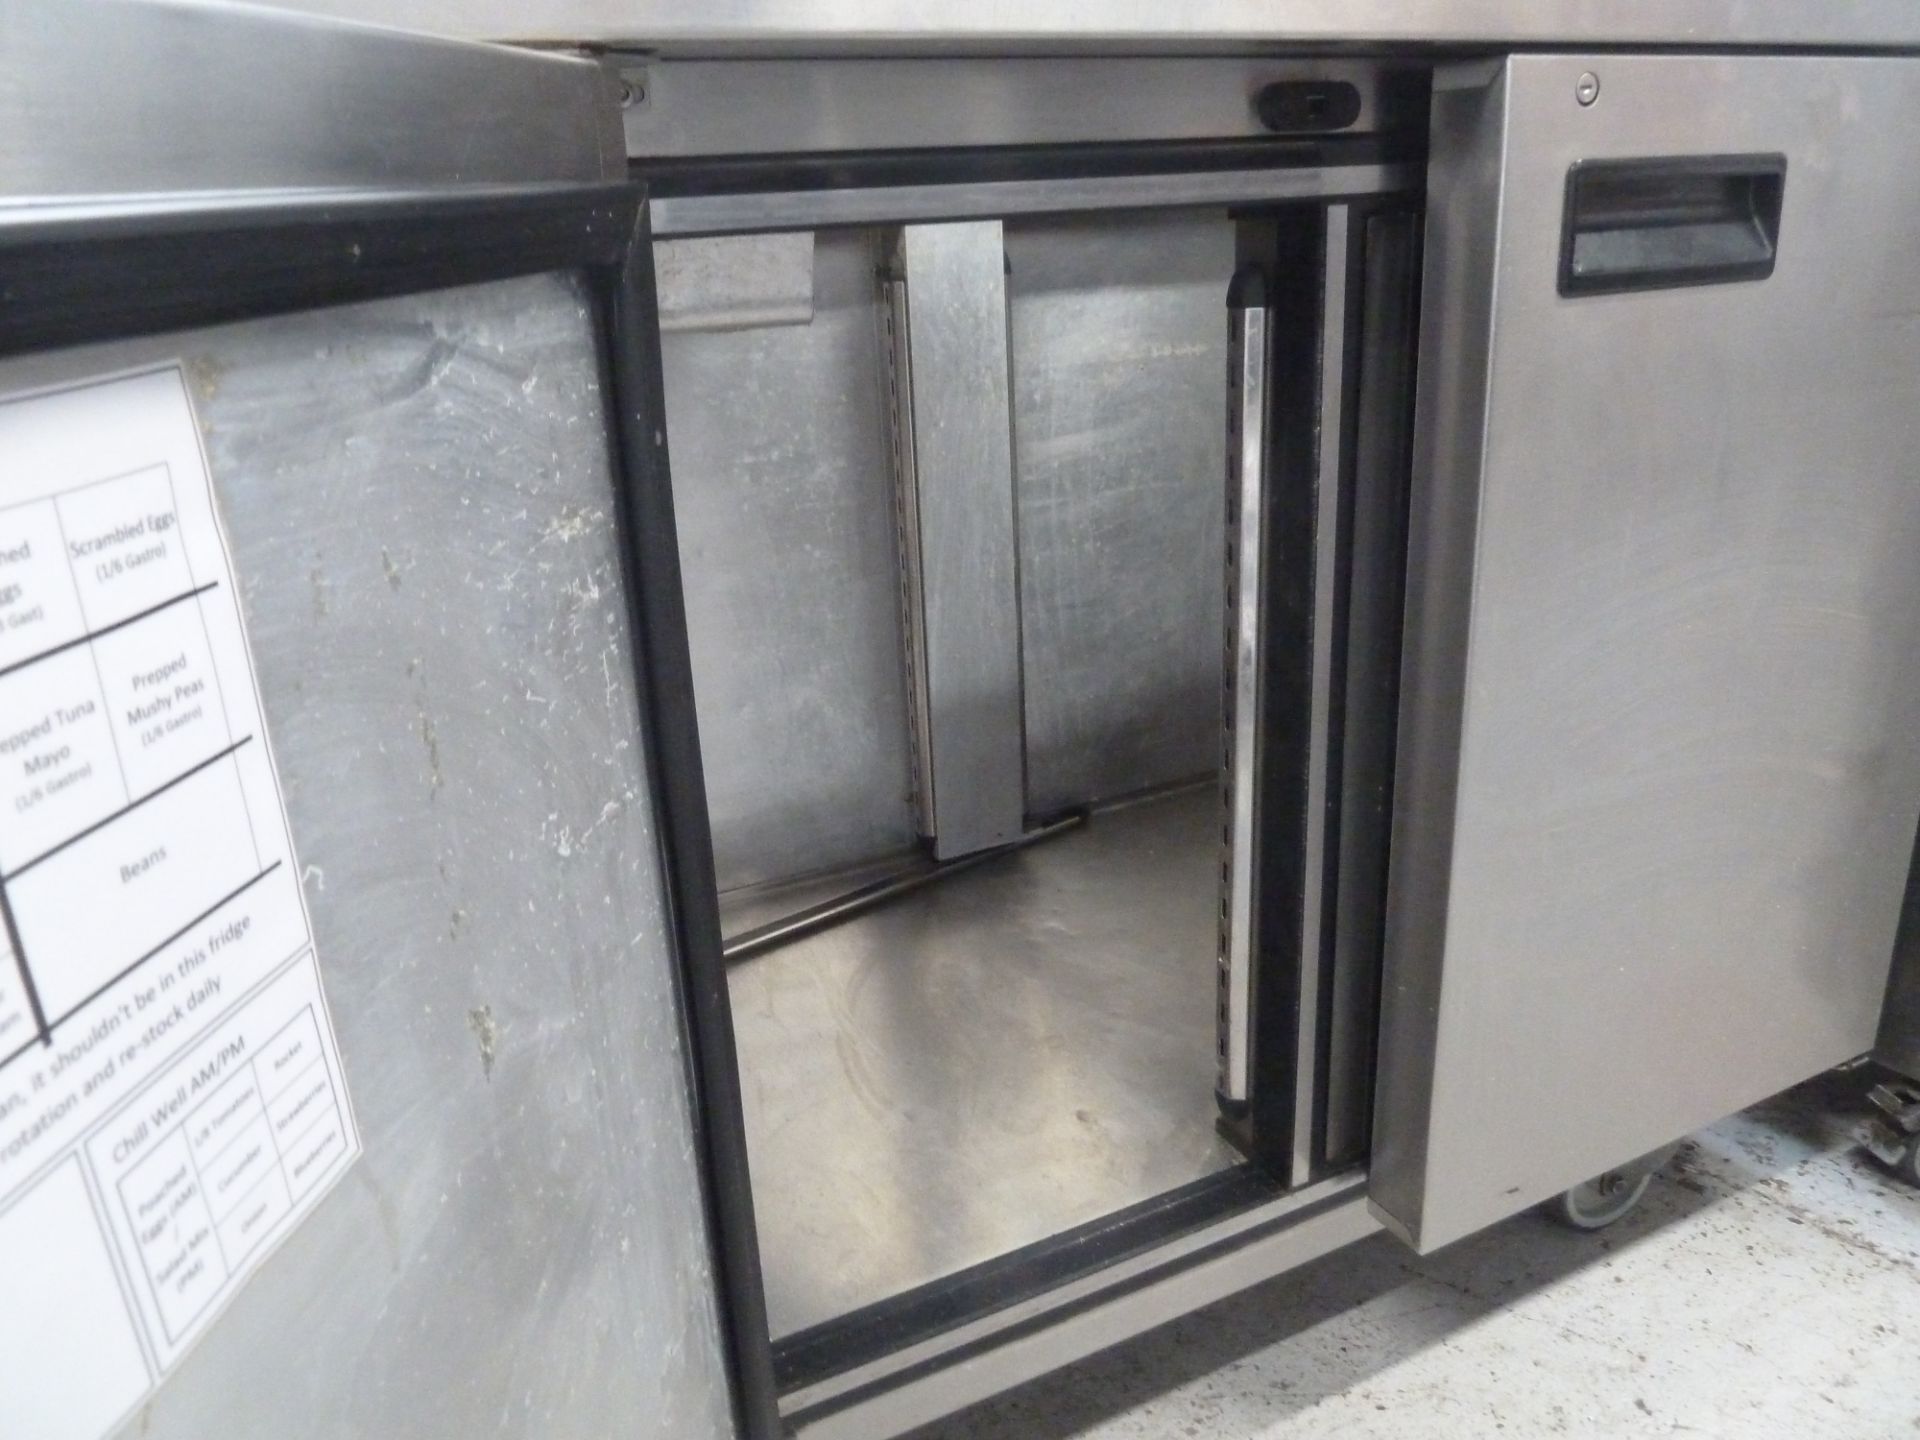 * Acme 2 door refridgerator Acme 2 door refridgerator with shelf. Ideal for storing catering - Image 2 of 3